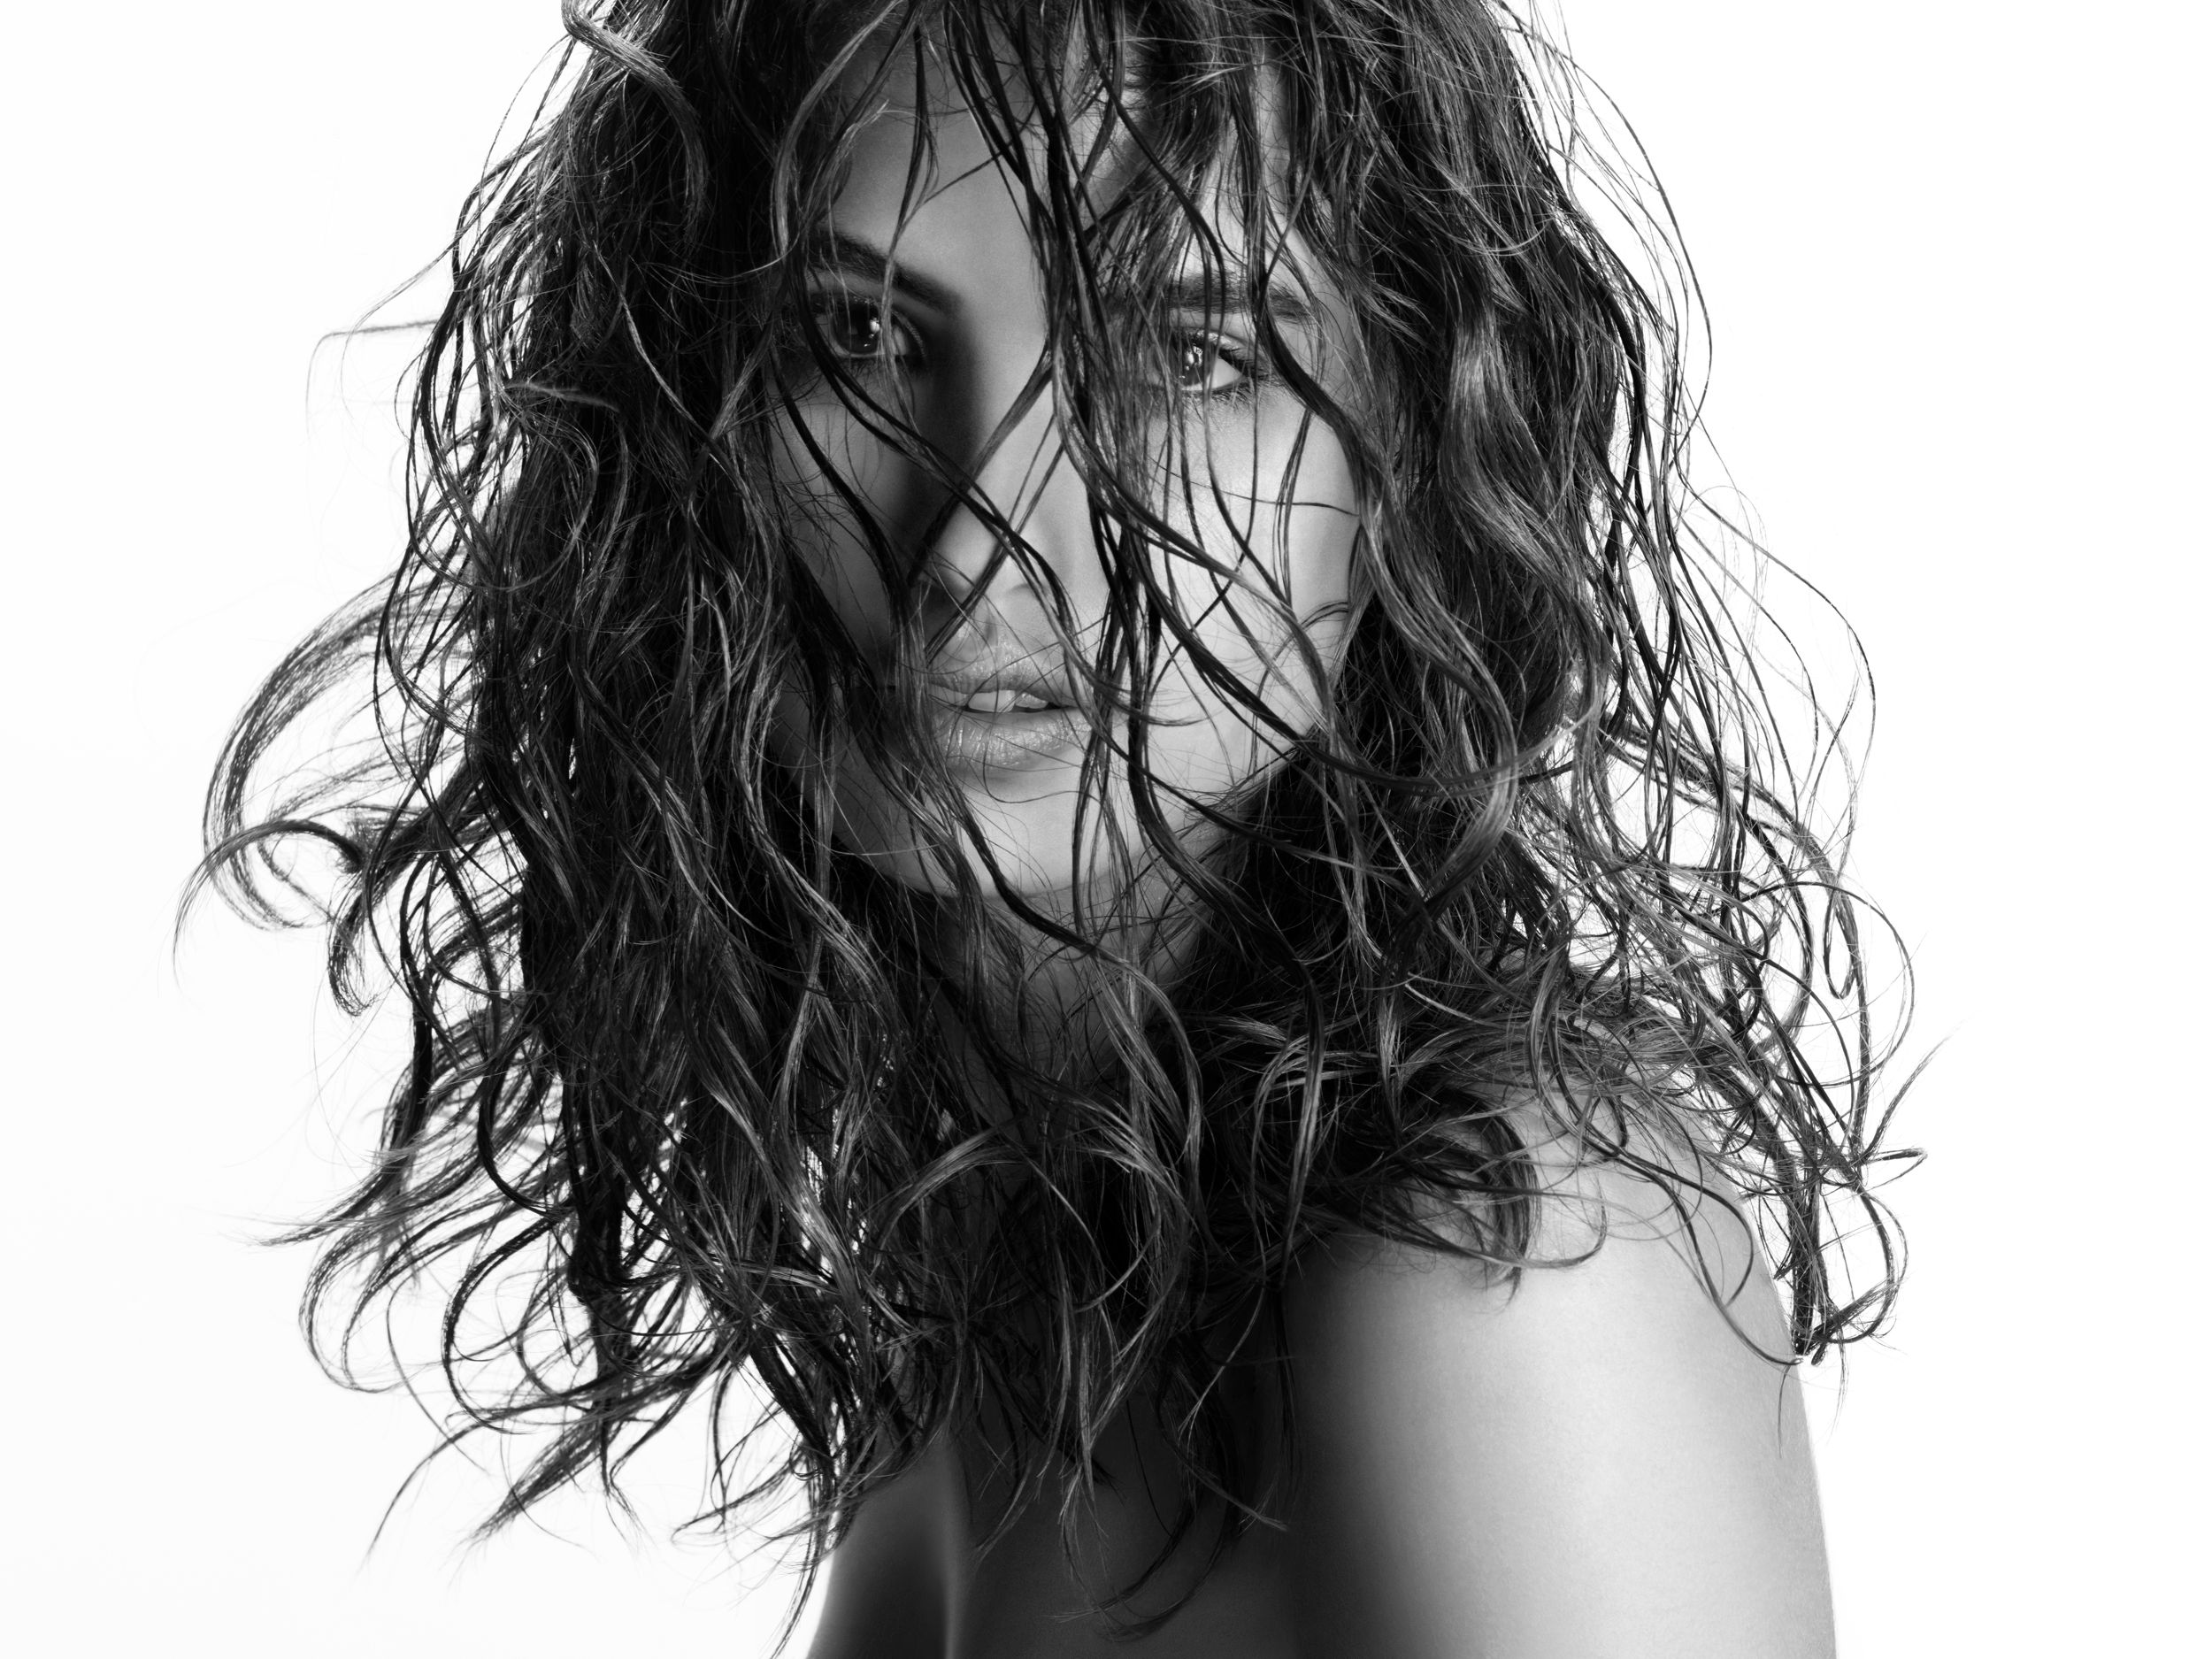 Stilovi Leonor Greyl kroz desetljeća: Glamurozne i prirodno lijepe kose